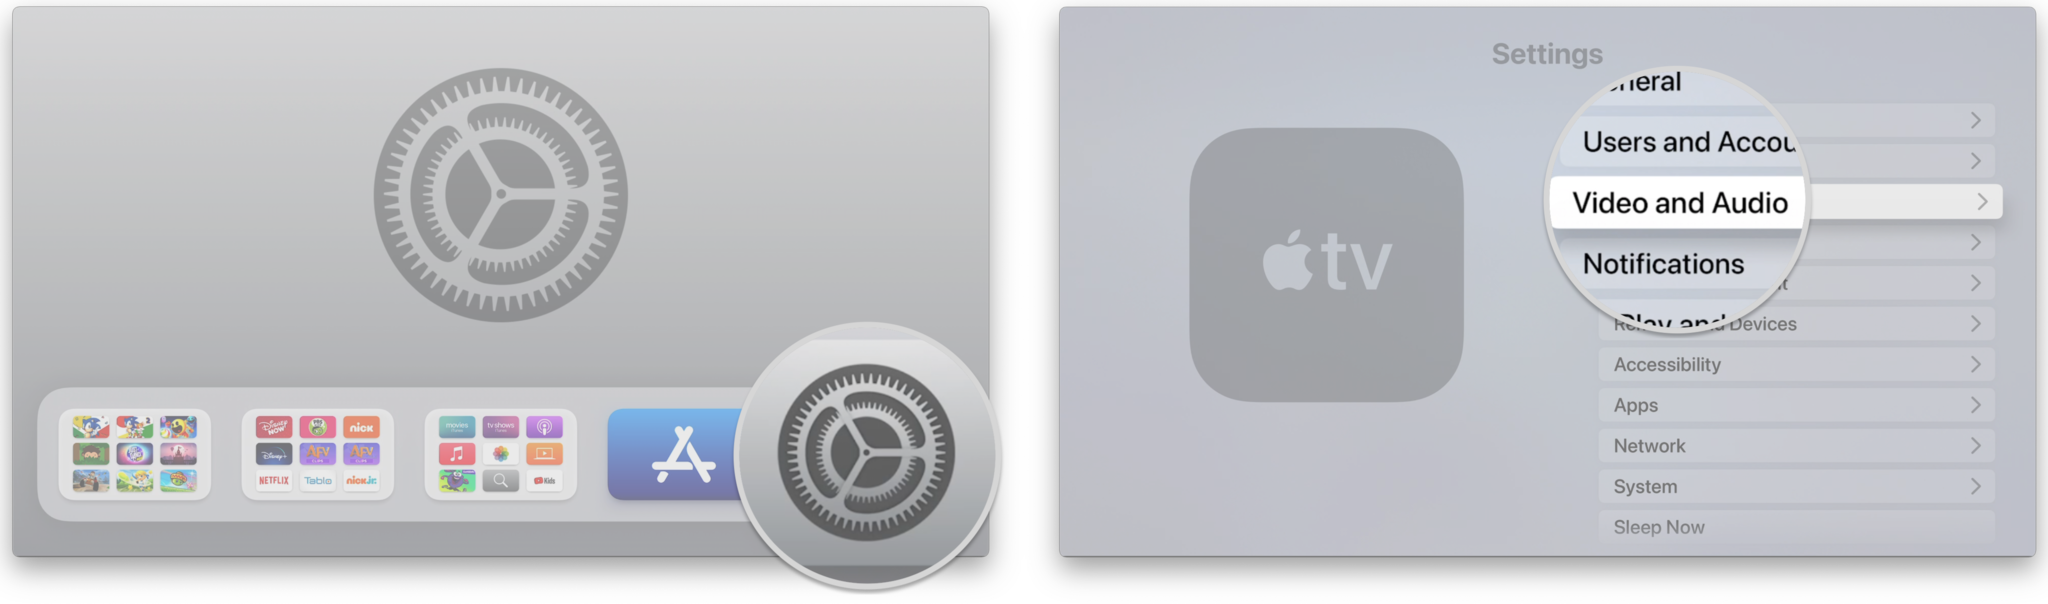 Comment activer le HDR sur Apple TV en affichant les étapes : ouvrez Paramètres, cliquez sur Vidéo et audio